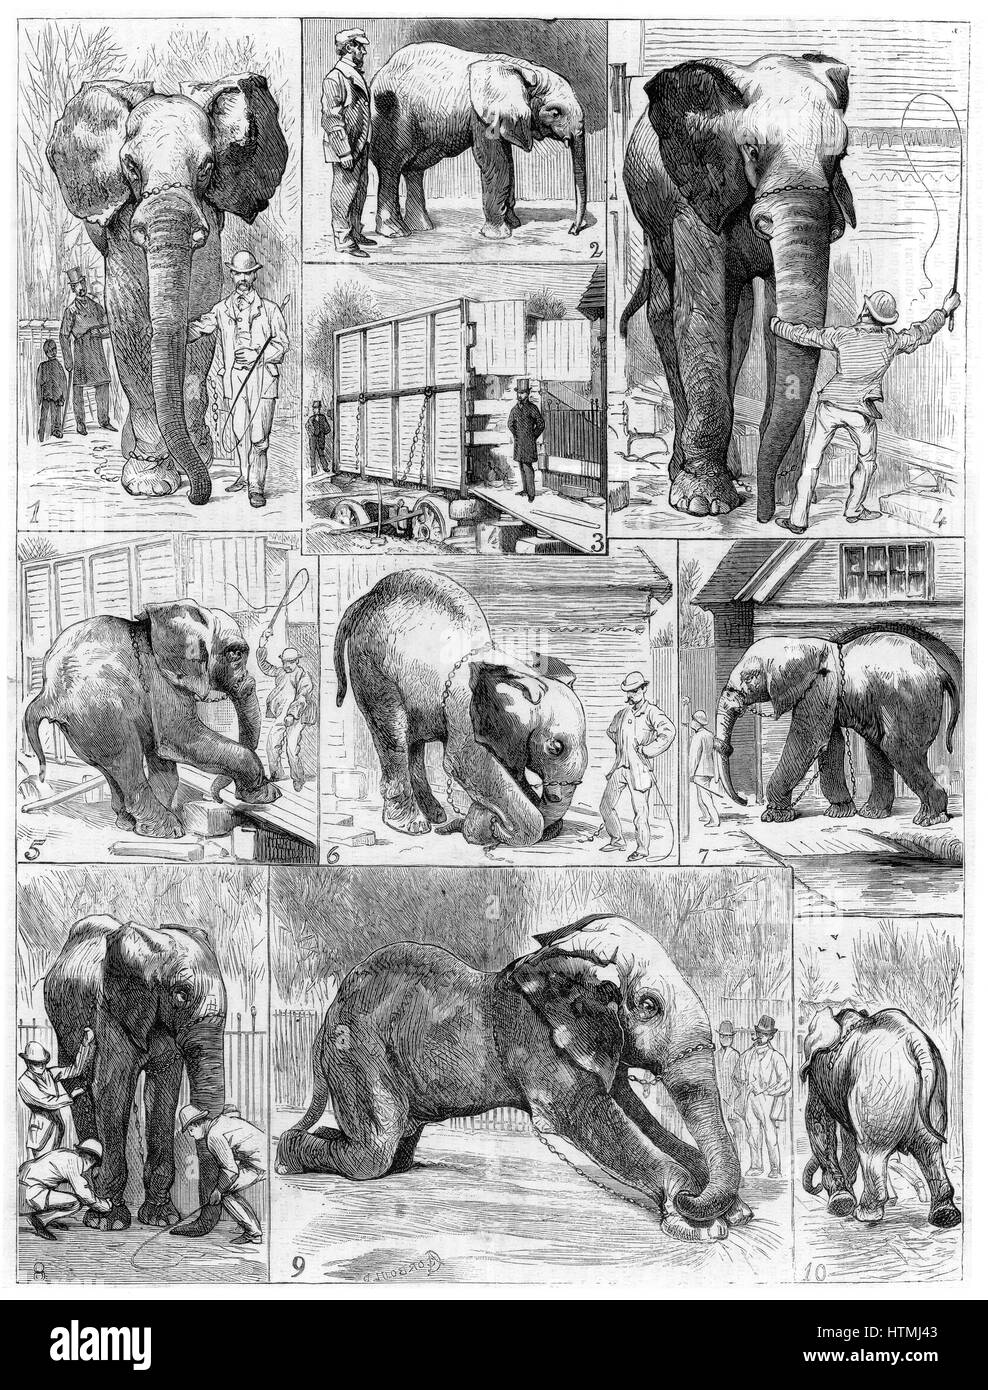 Jumbo die große afrikanische Elefant von London Zoo im Jahre 1882 an verkauft der amerikanischen Showman Phineas Taylor Barnum (1810-1891) für seinen Zirkus als die "Greatest Show on Earth" bekannt wurde. Schwierigkeiten dabei, Jumbo, sein Quartier zu verlassen Stockfoto